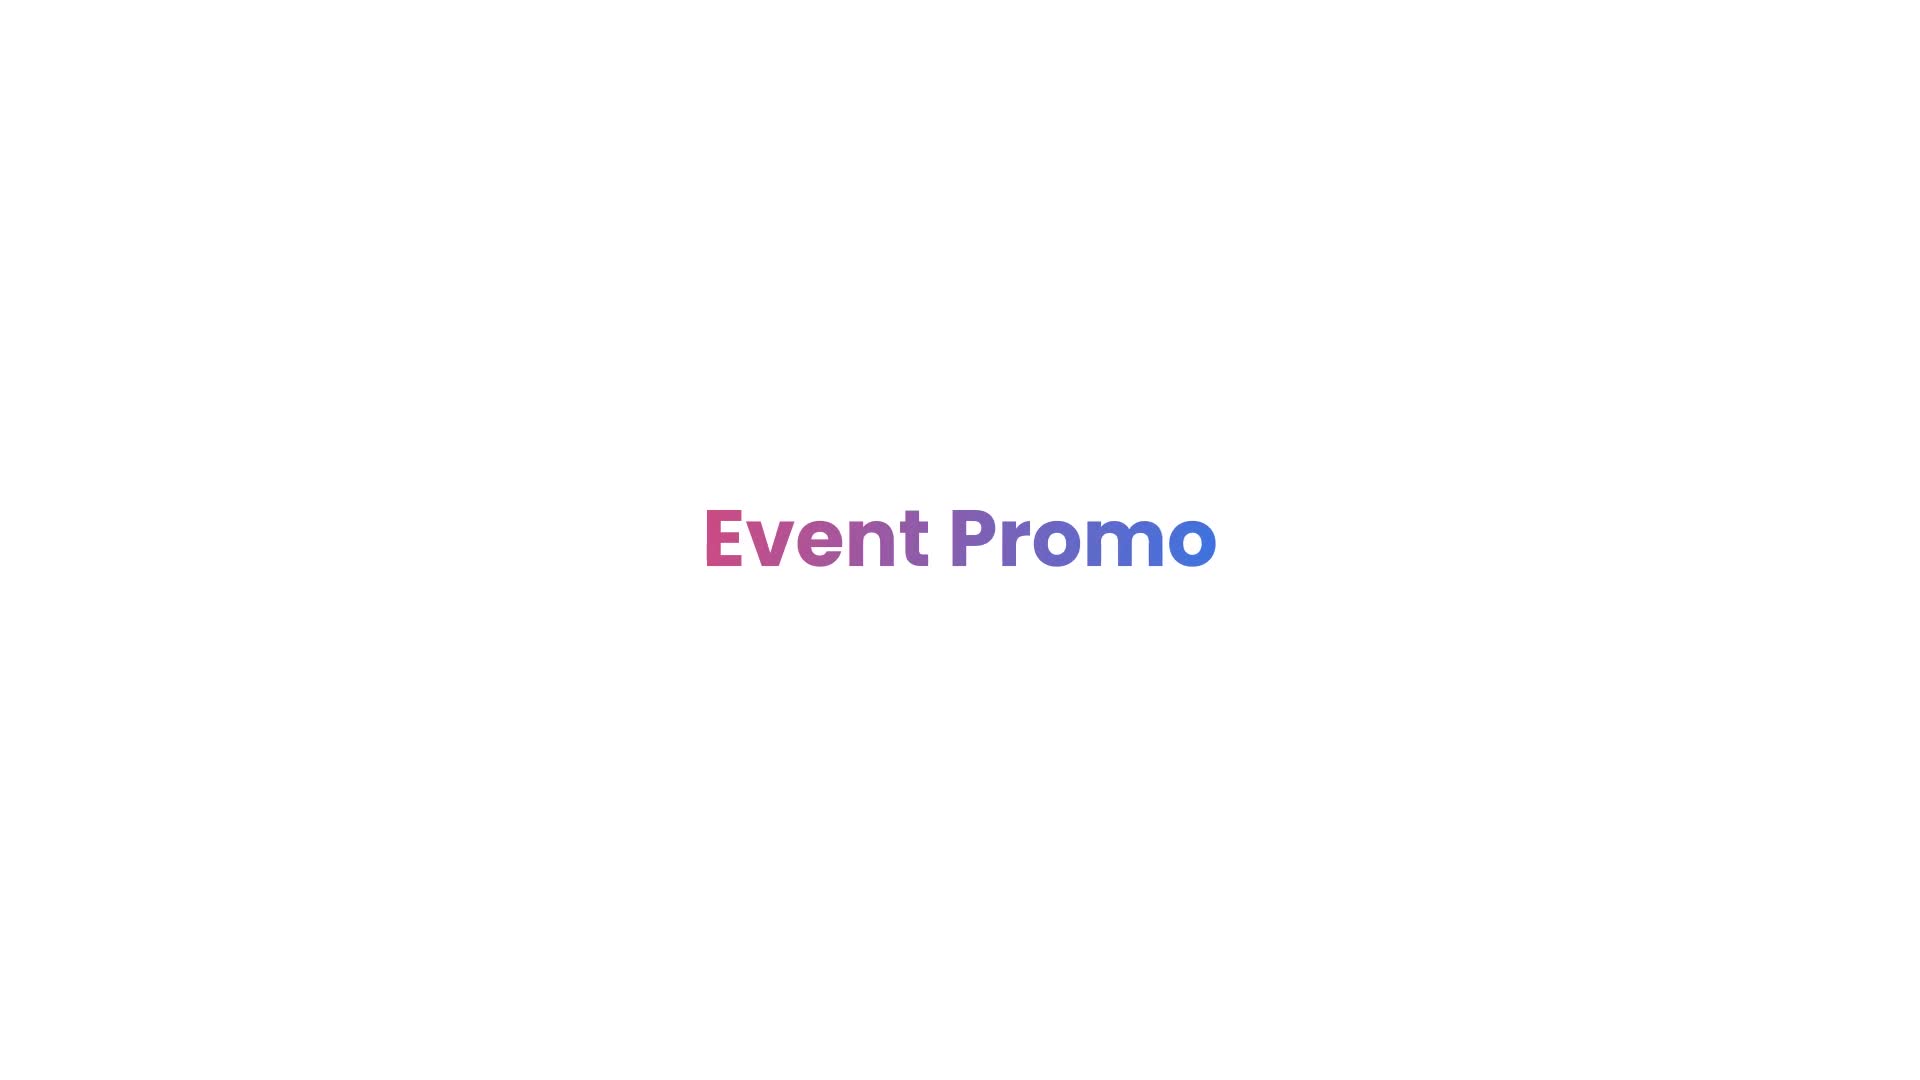 Event Promo Videohive 35248963 Premiere Pro Image 1